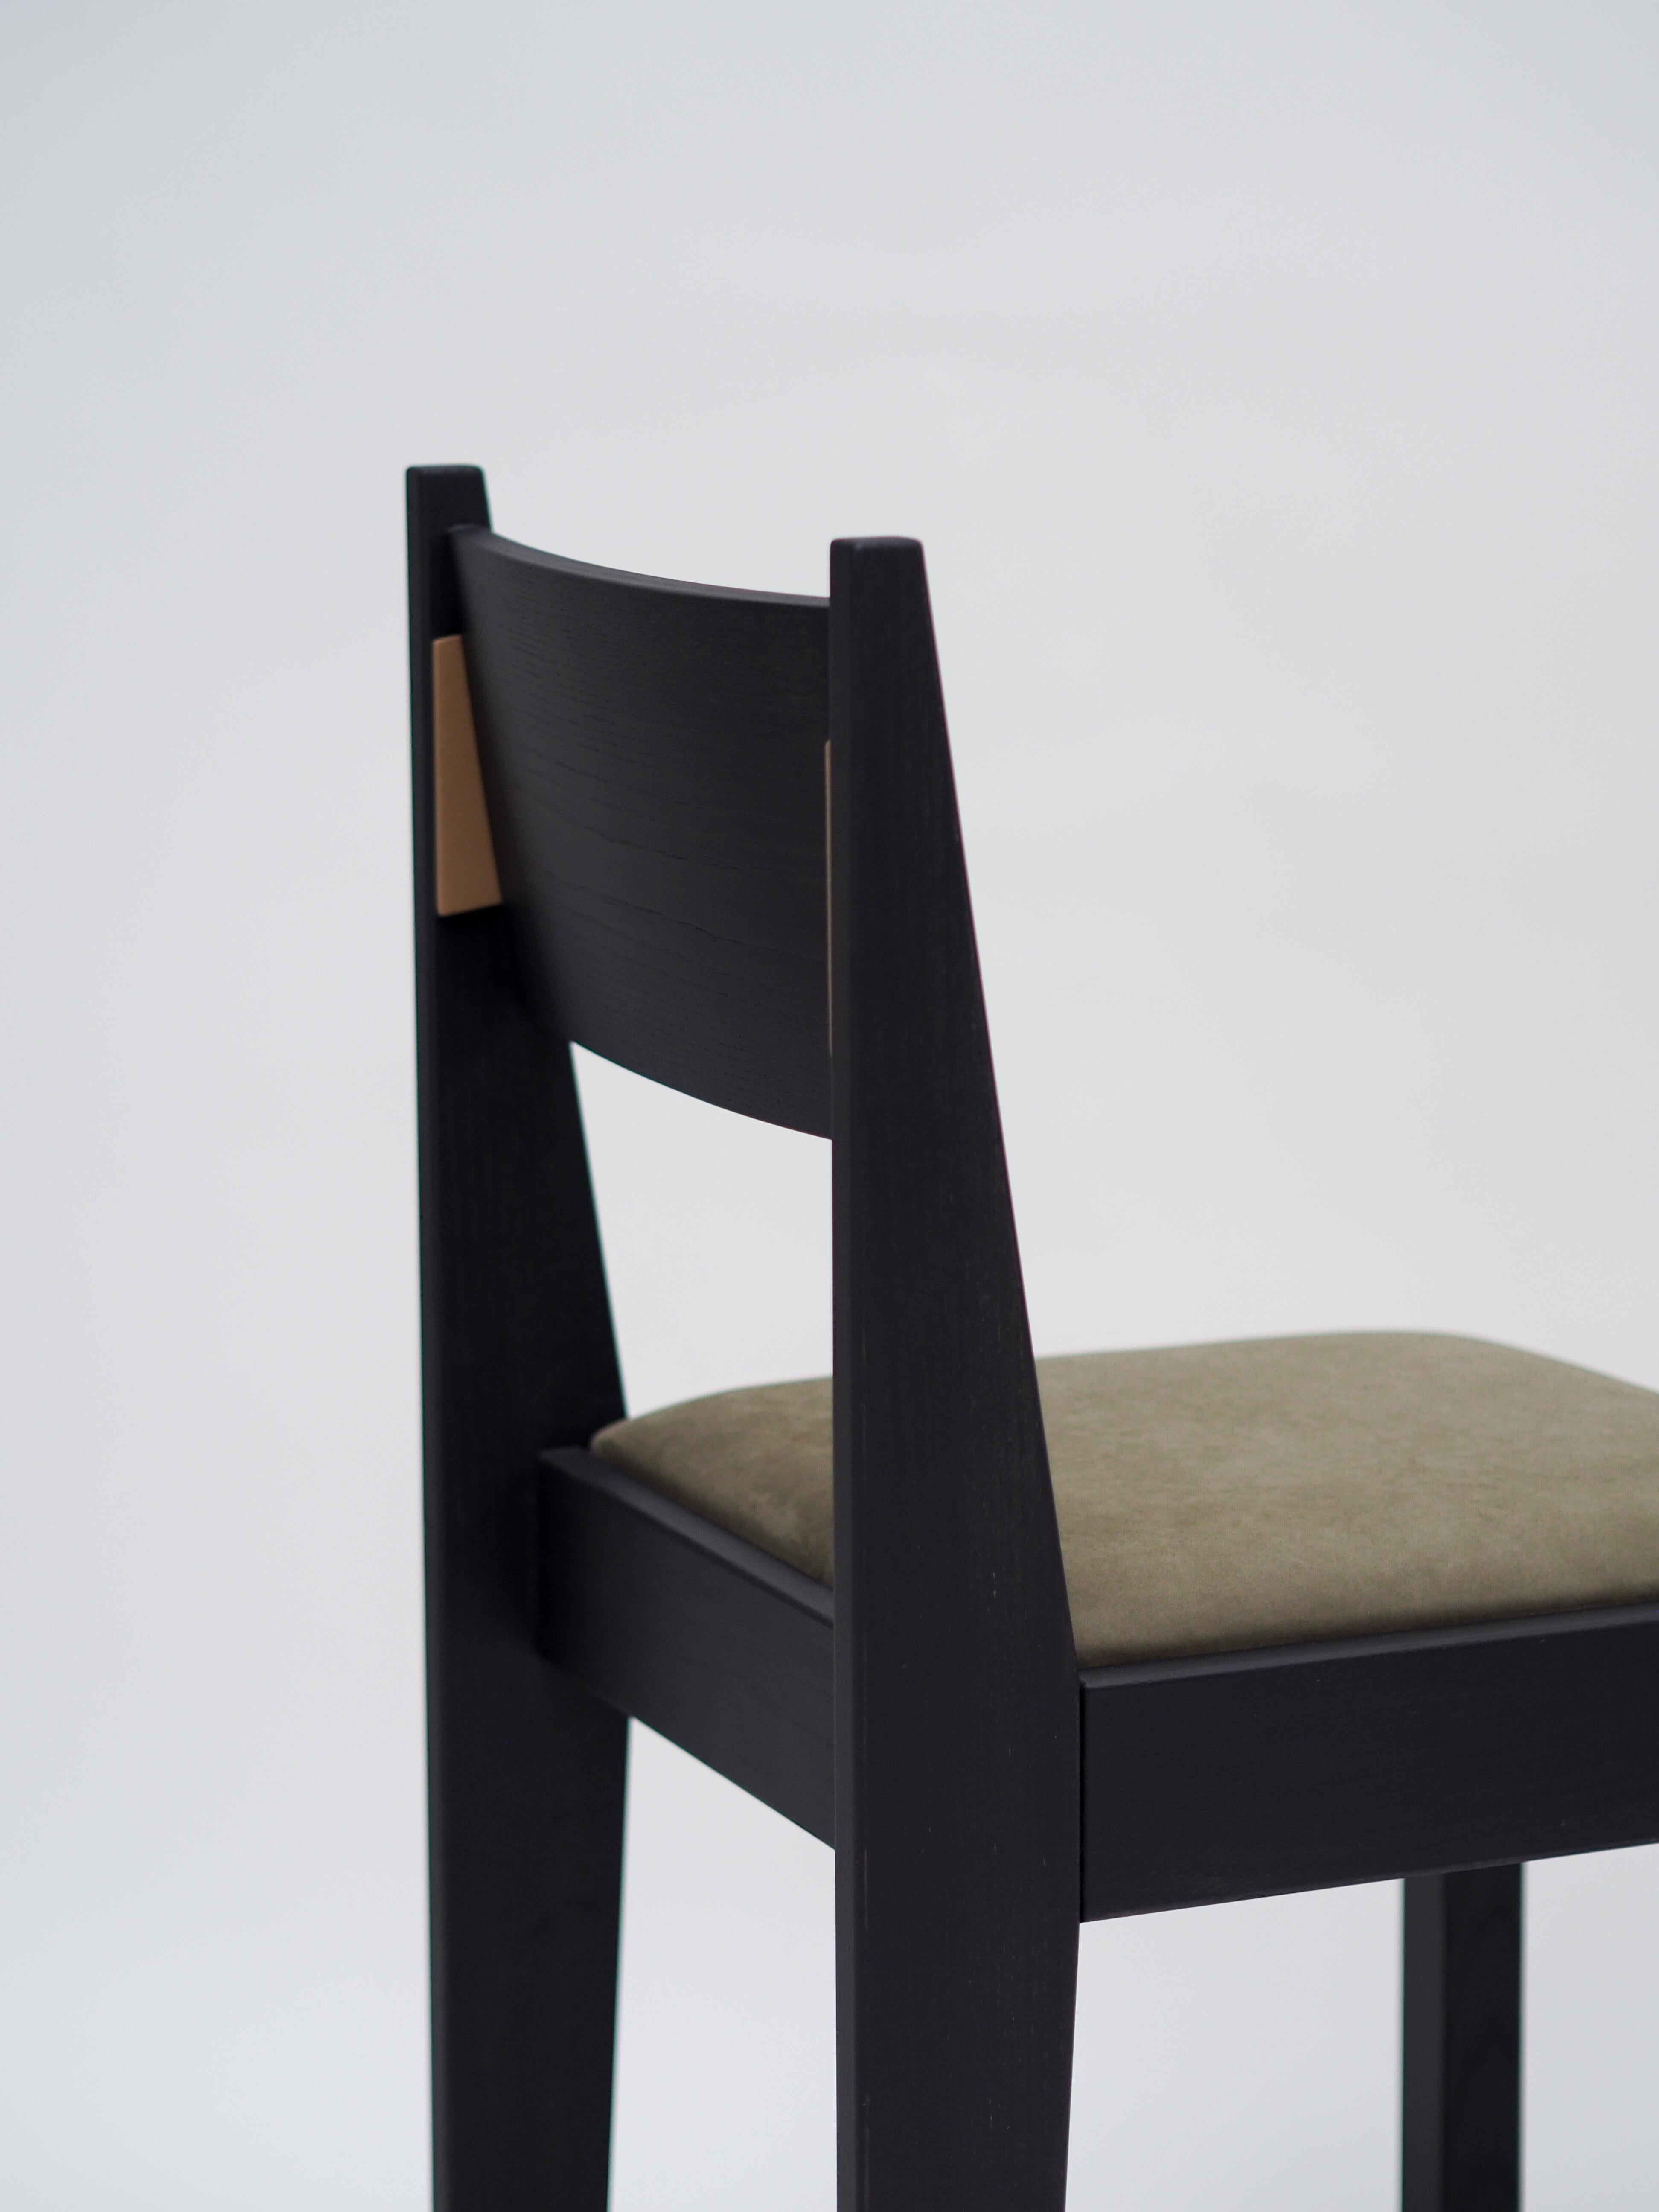 Notre chaise barh 01 est un design classique et contemporain aux détails les plus fins. Inspirée du mouvement Art déco, la chaise a un aspect familier, ce qui la rend intemporelle et adaptée à presque tous les intérieurs. Pour compléter le tableau